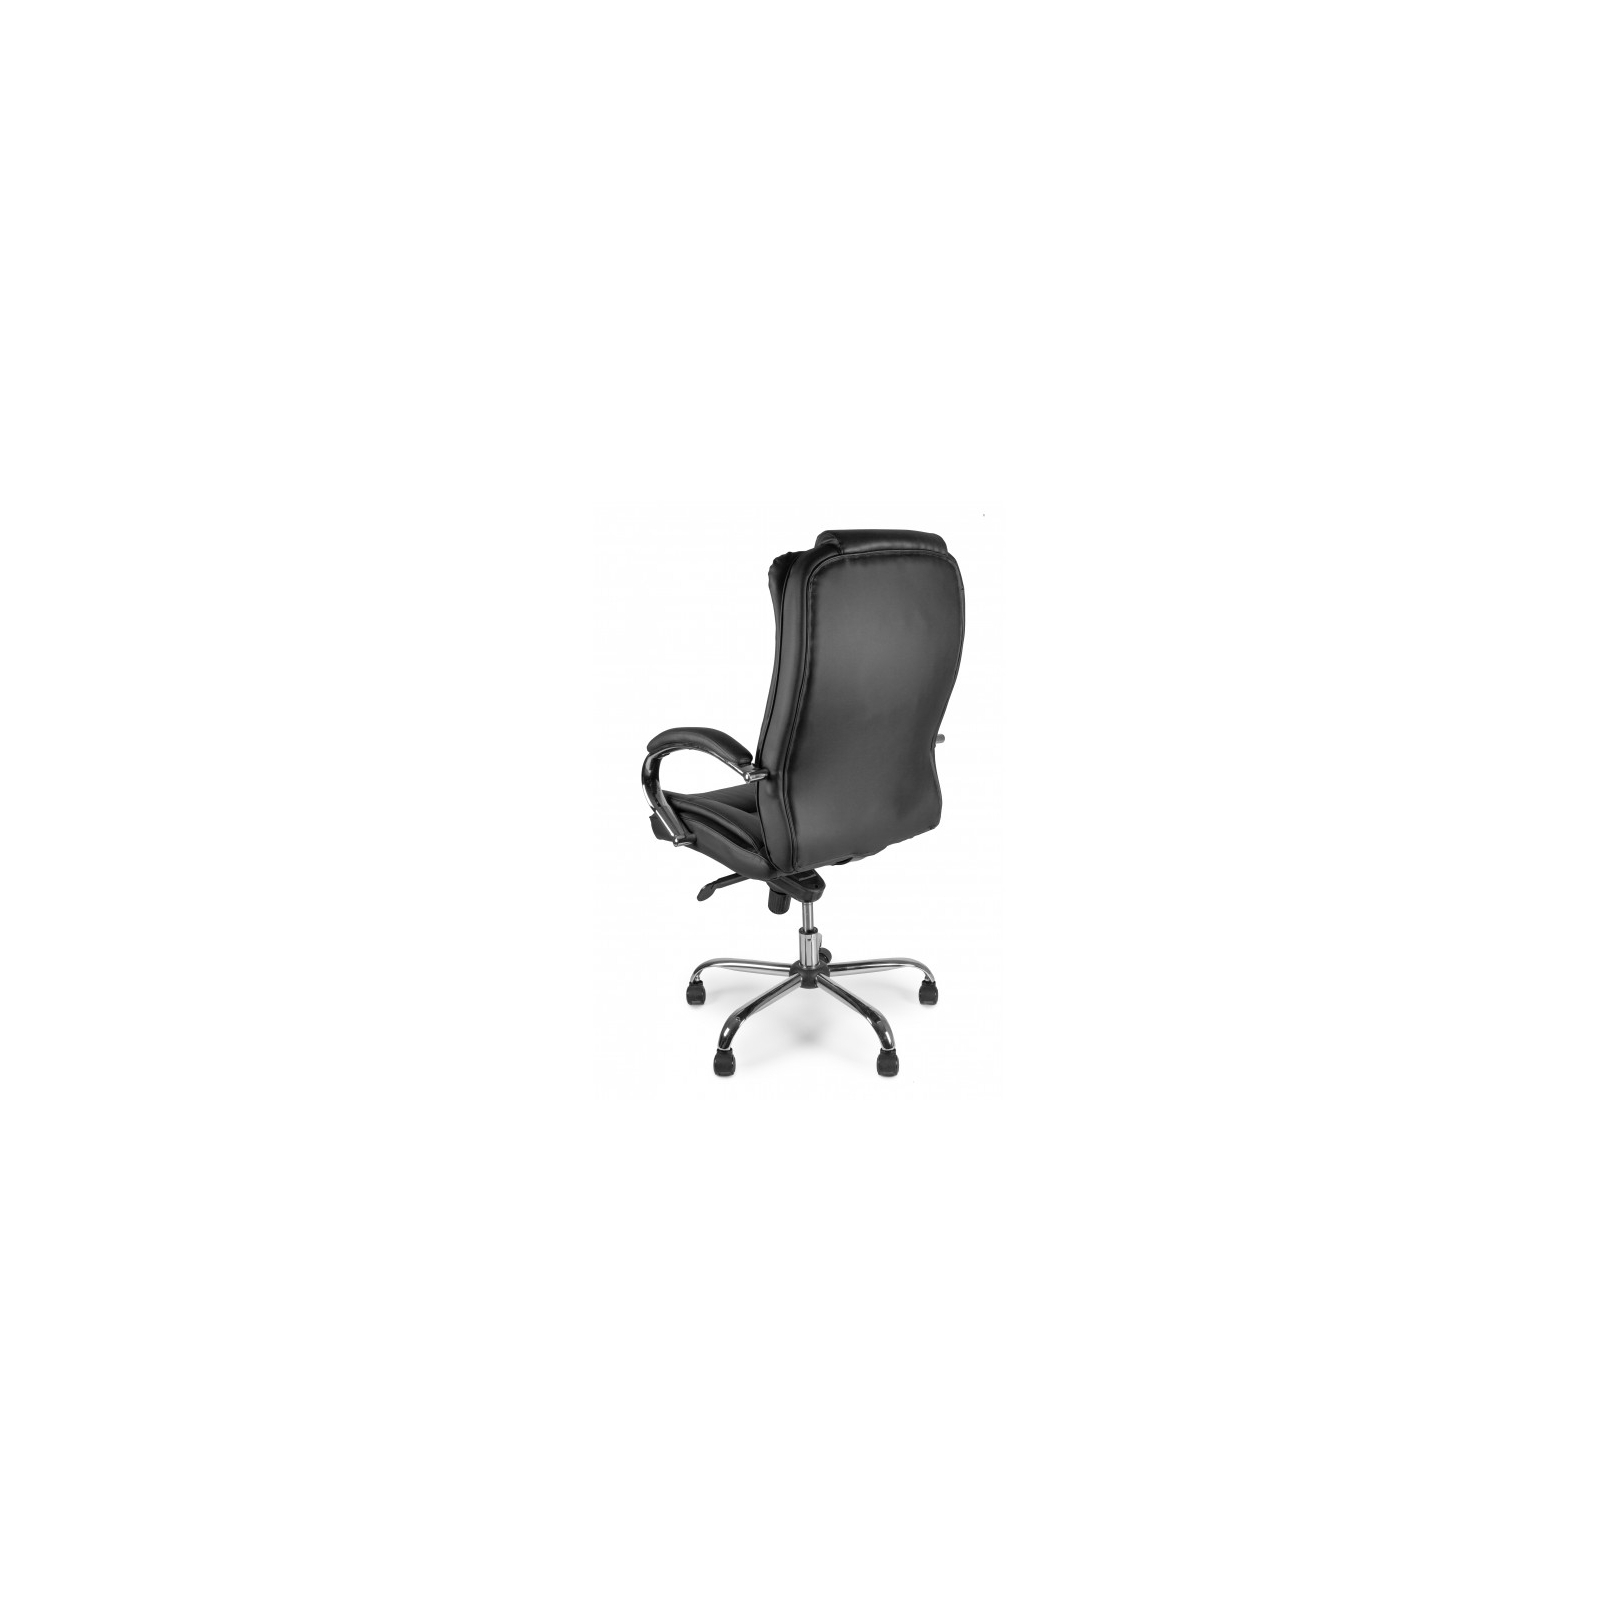 Офисное кресло Barsky Soft Leather MultiBlock Сhrom (Soft-05) изображение 7